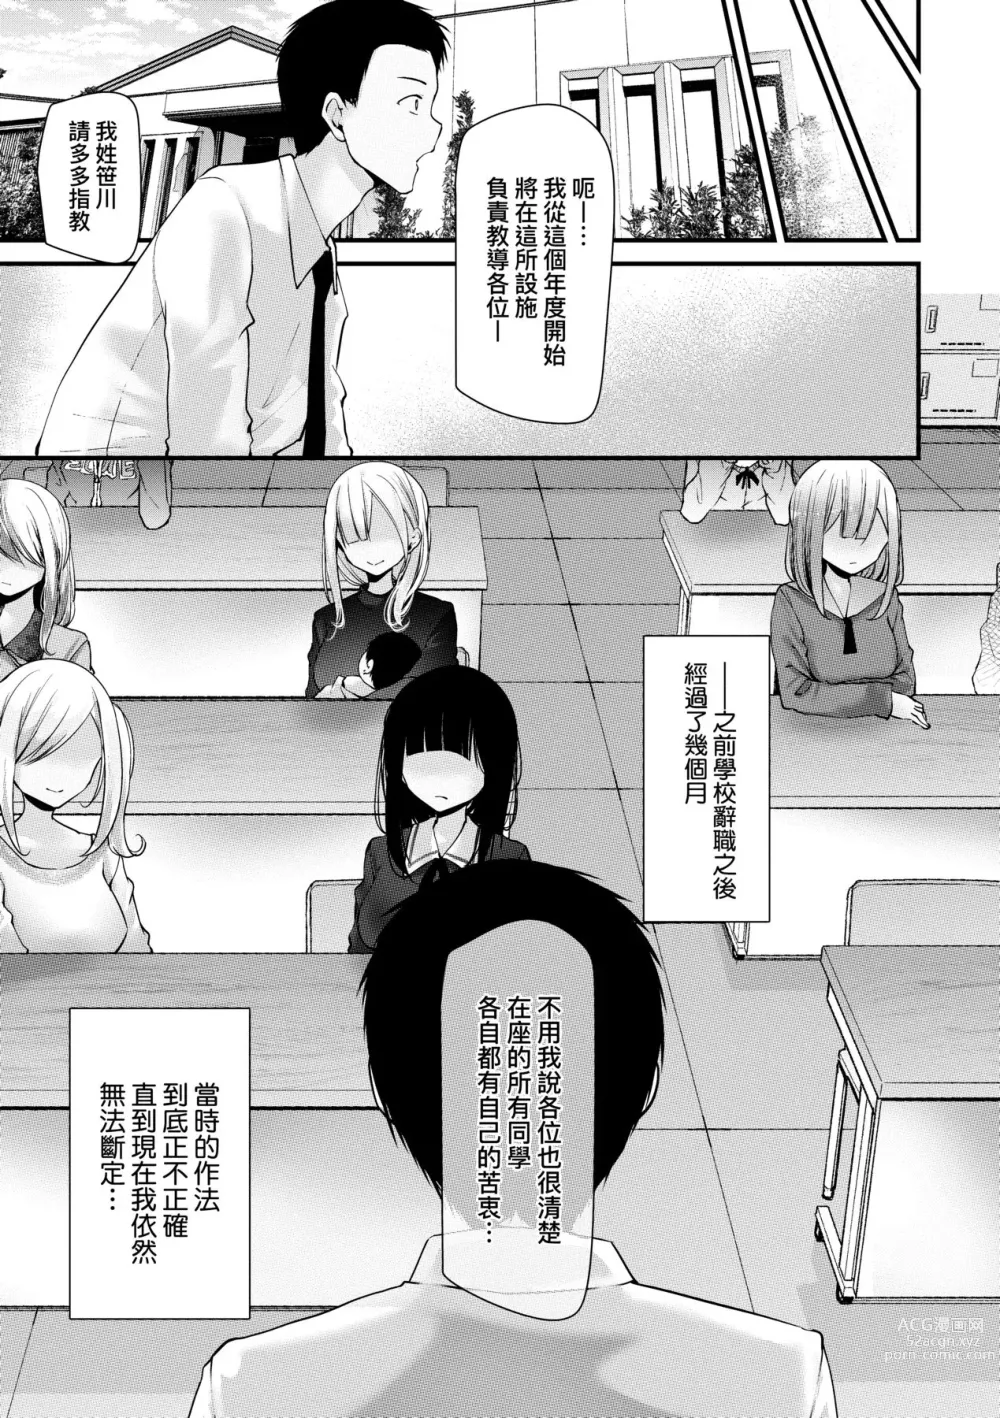 Page 209 of manga 自慰套教室-新學期- 女學生播種懲罰計畫 (decensored)